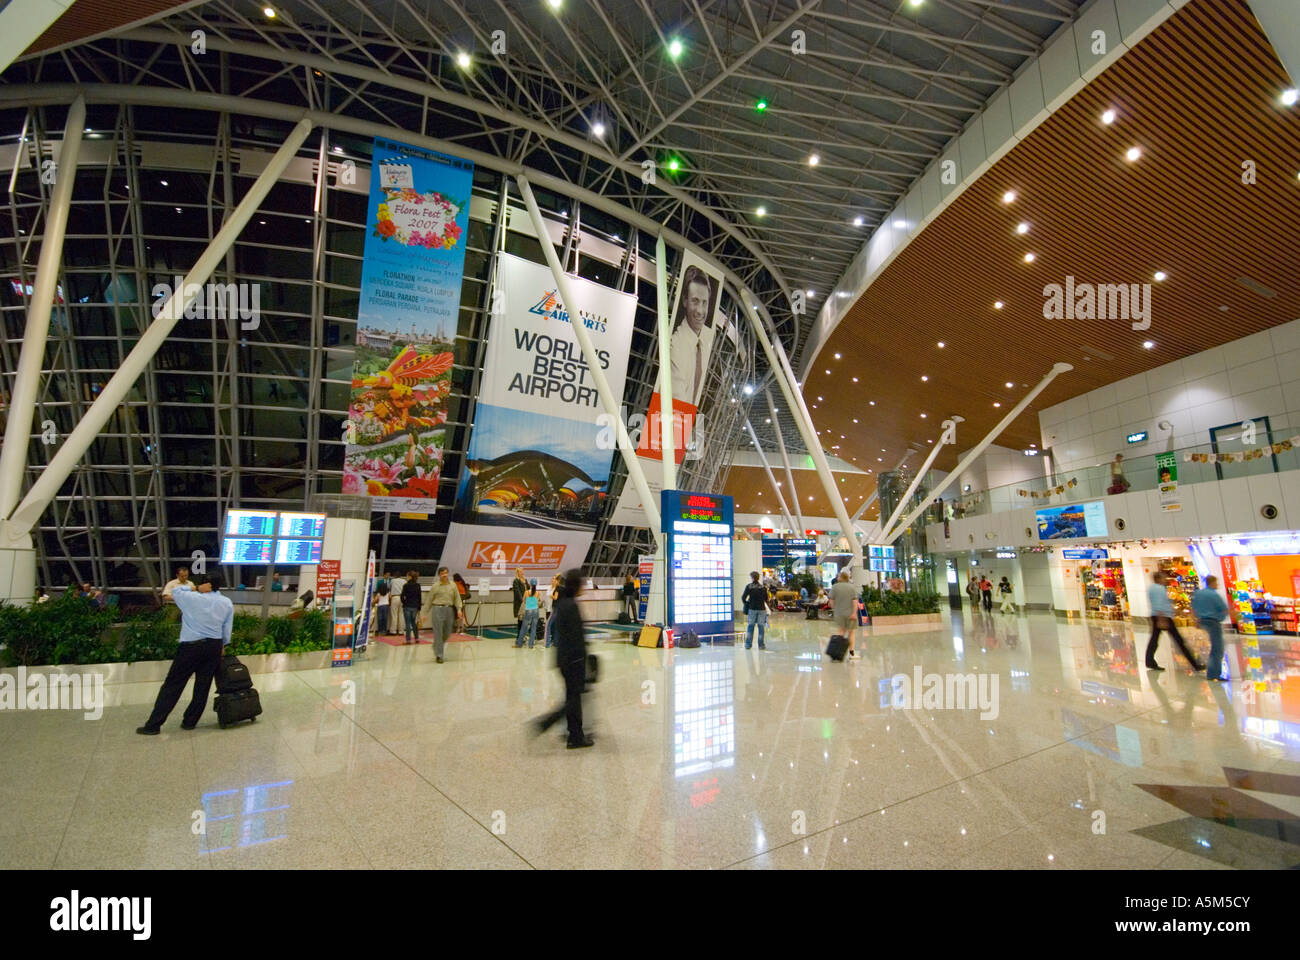 L'Aeroporto Internazionale di Kuala Lumpur in Malesia votato mondo s miglior aeroporto Foto Stock